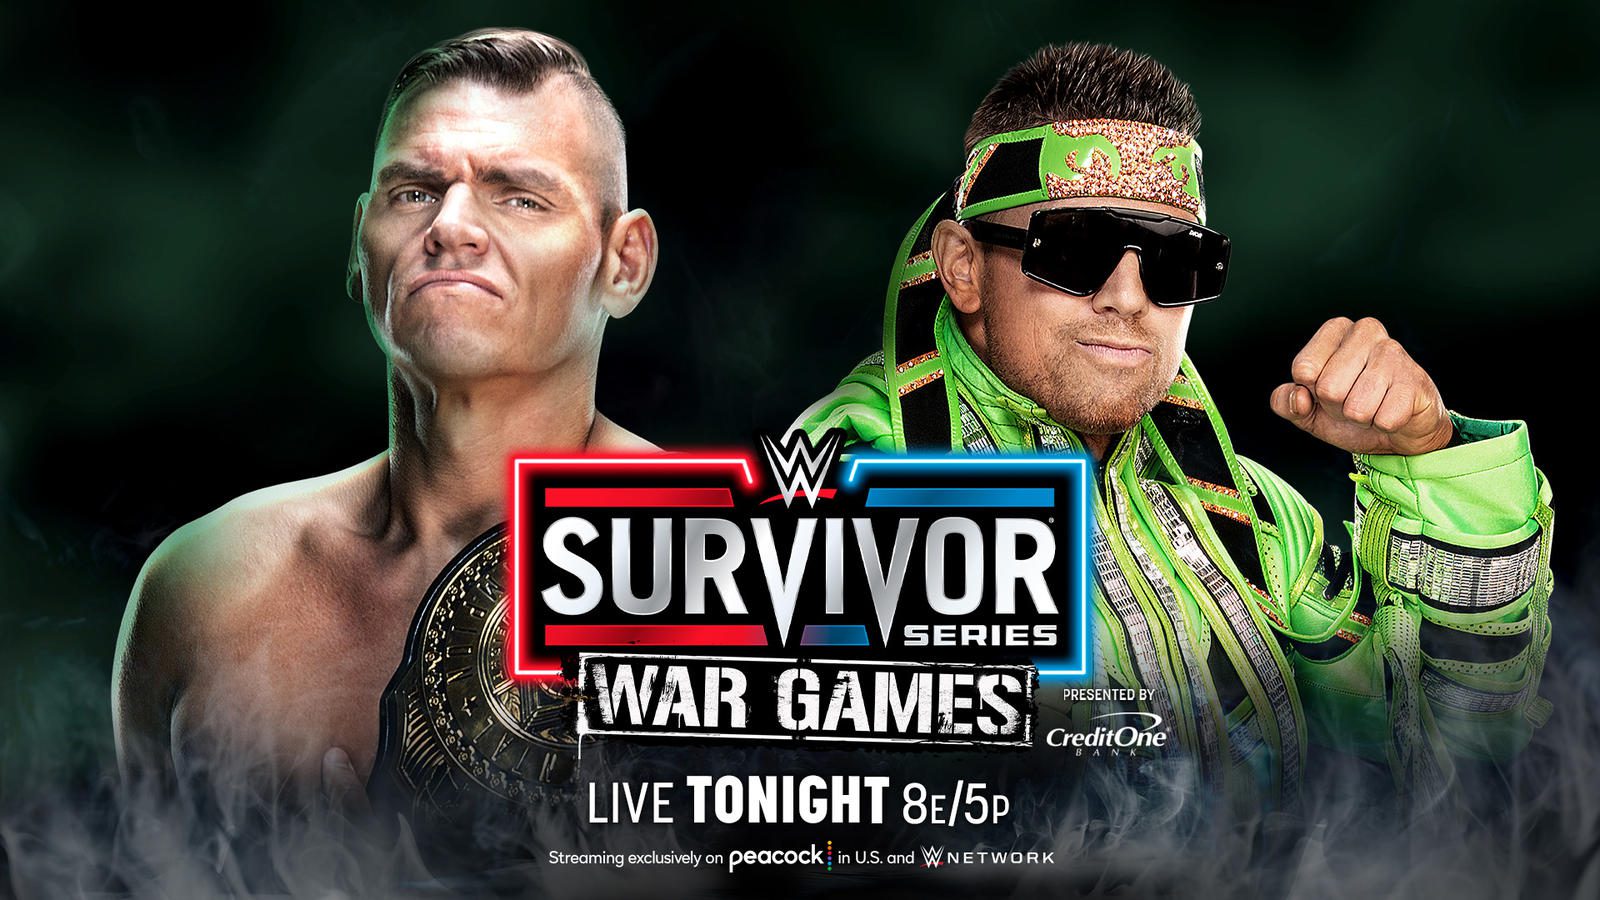 WWE Survivor Series results: Gunther vs. The Miz